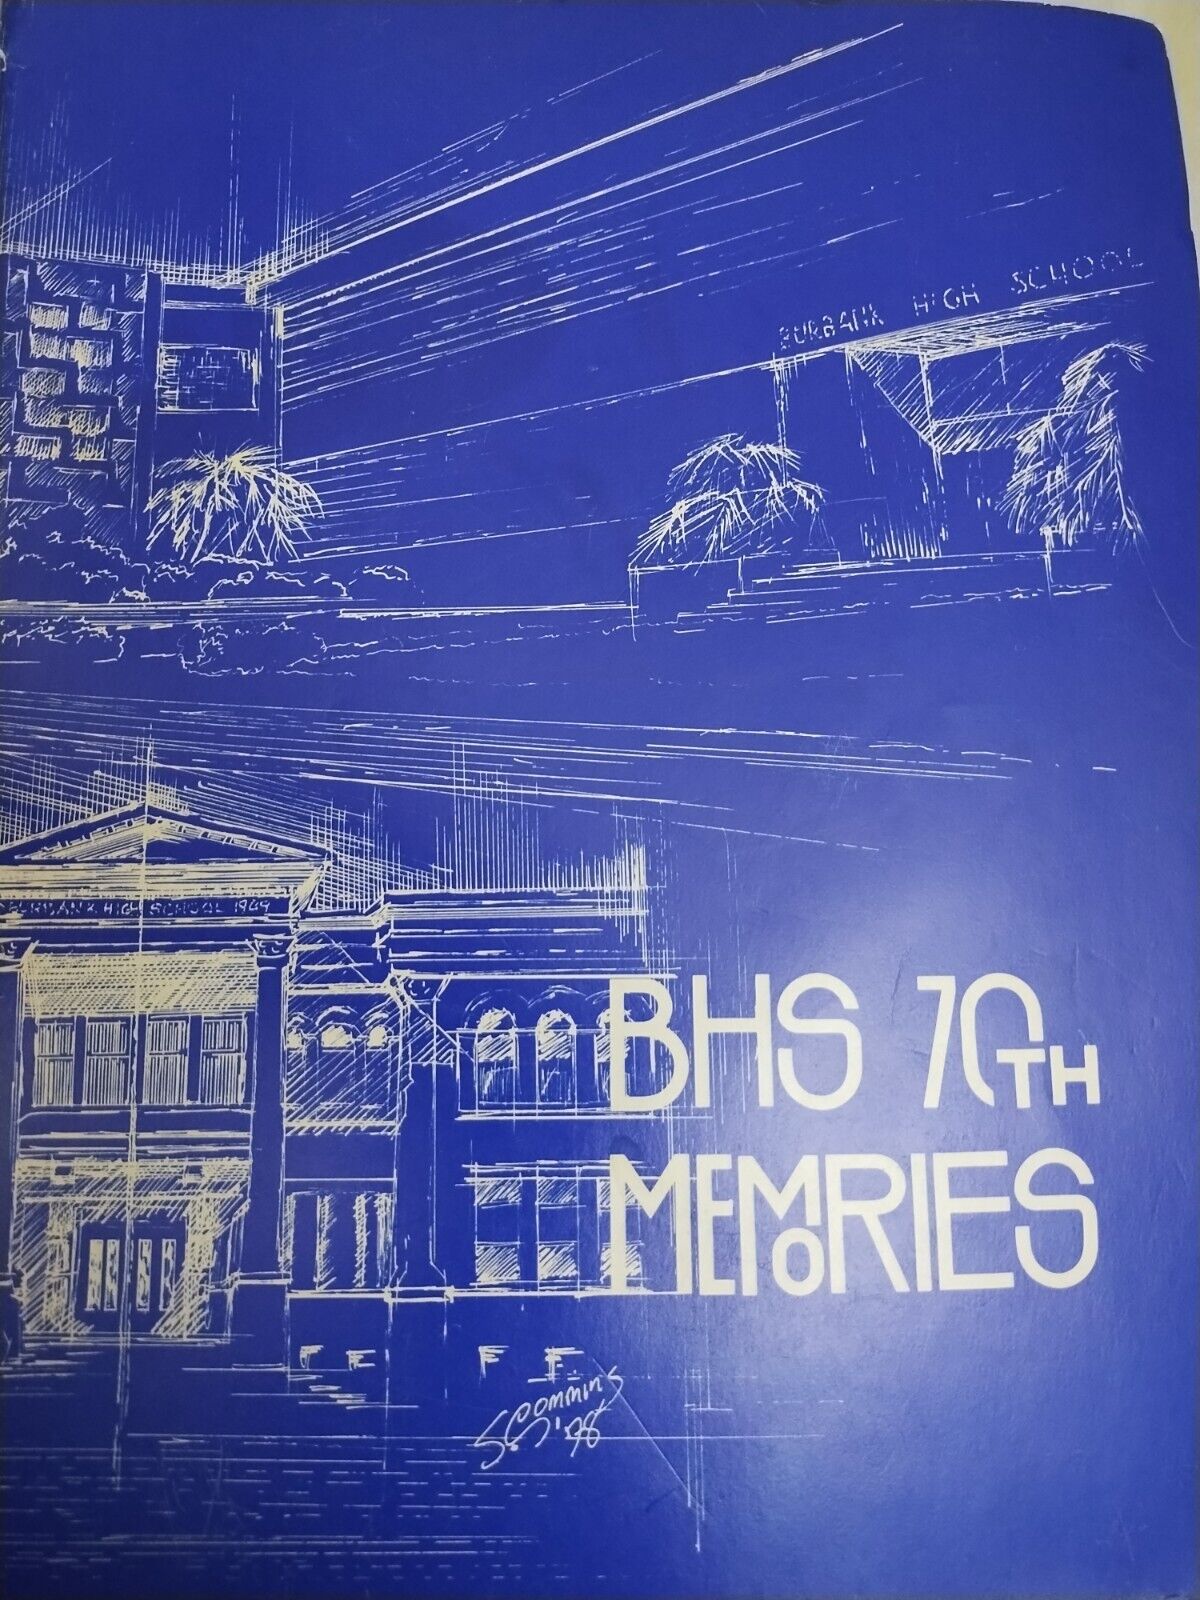 1978 BURBANK HIGH SCHOOL 70TH ANNIVERSARY MEMORIES BOOK, BURBANK Read Descriptio